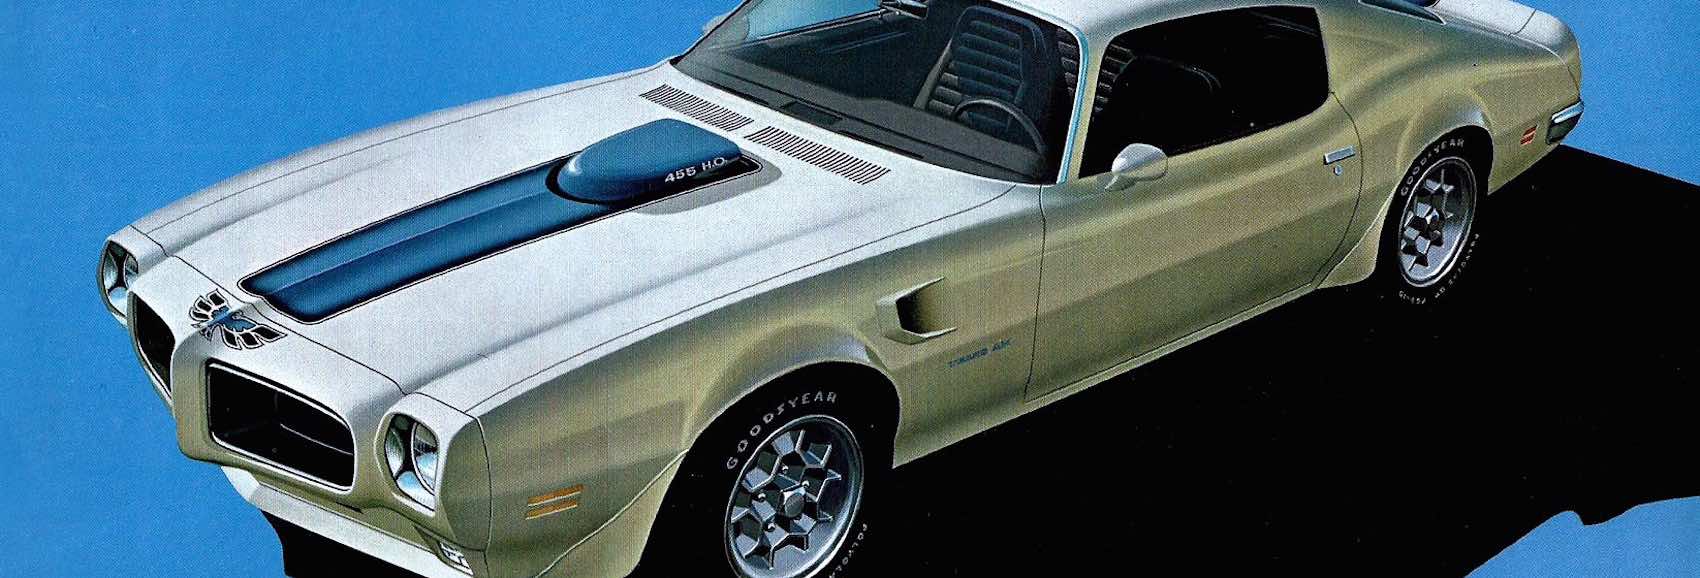 Pontiac-Trans-am-71